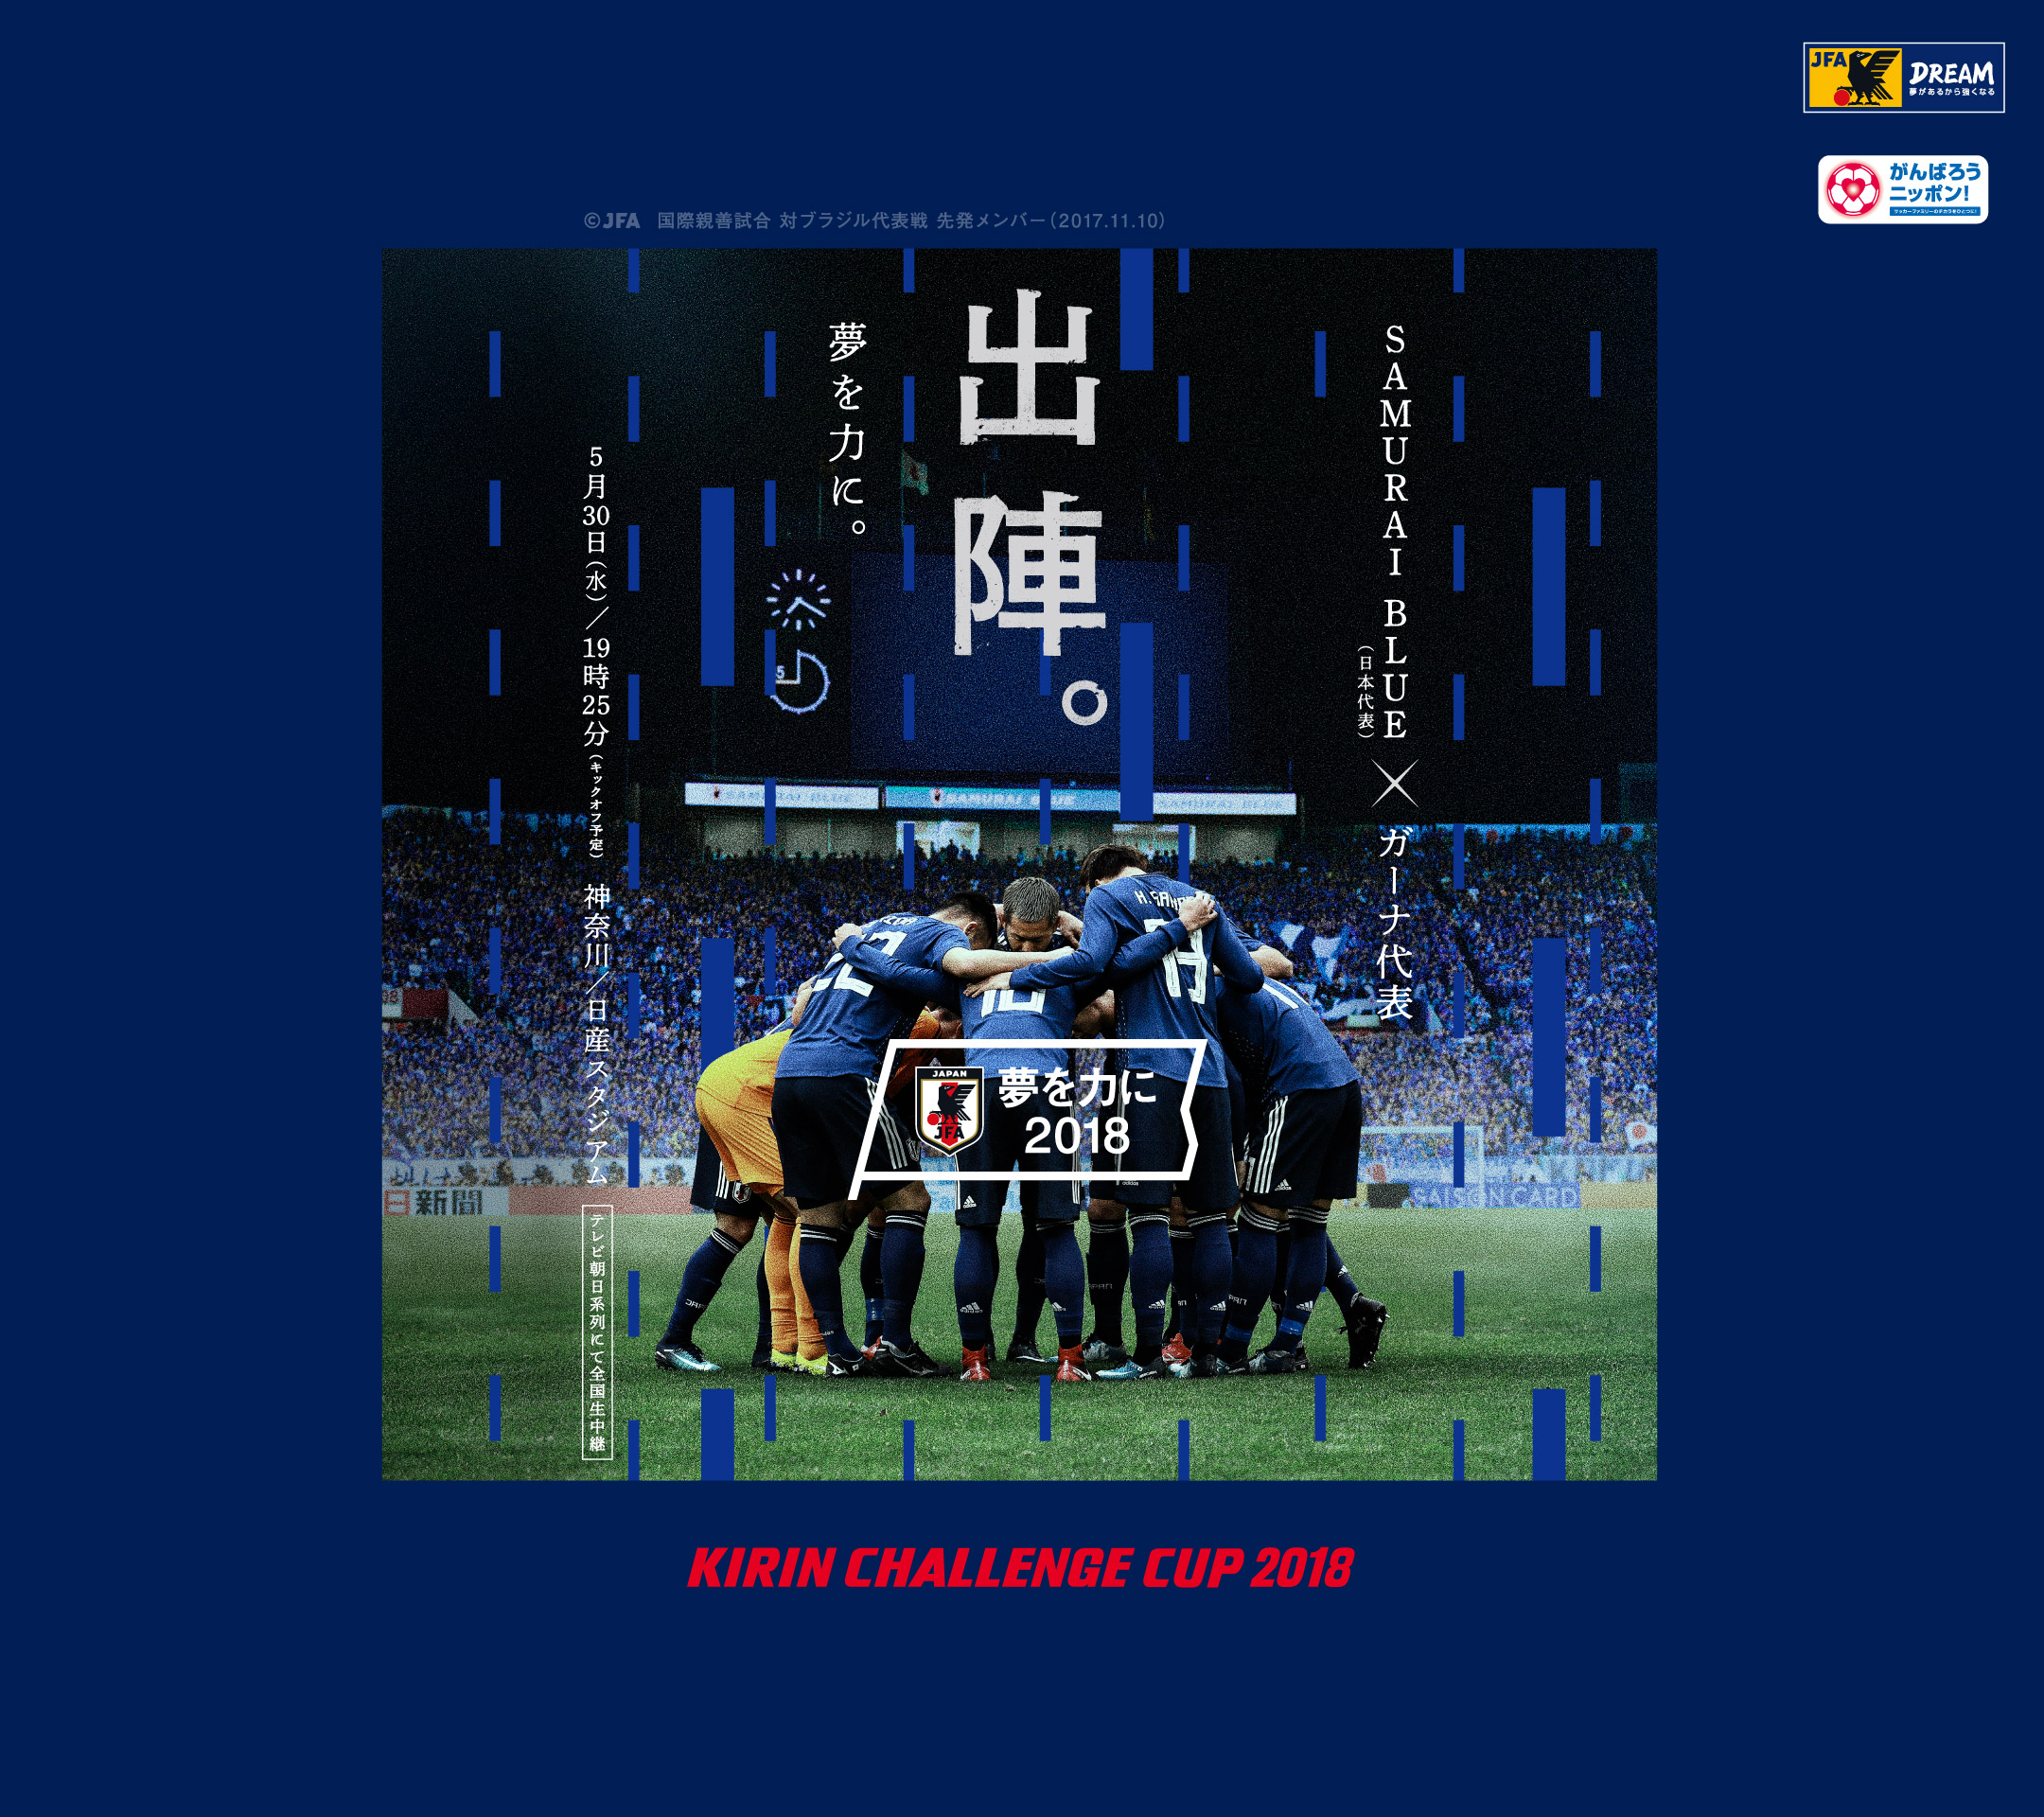 壁紙 ポスターダウンロード キリンチャレンジカップ18 5 30 Samurai Blue 日本代表 Jfa 日本サッカー協会